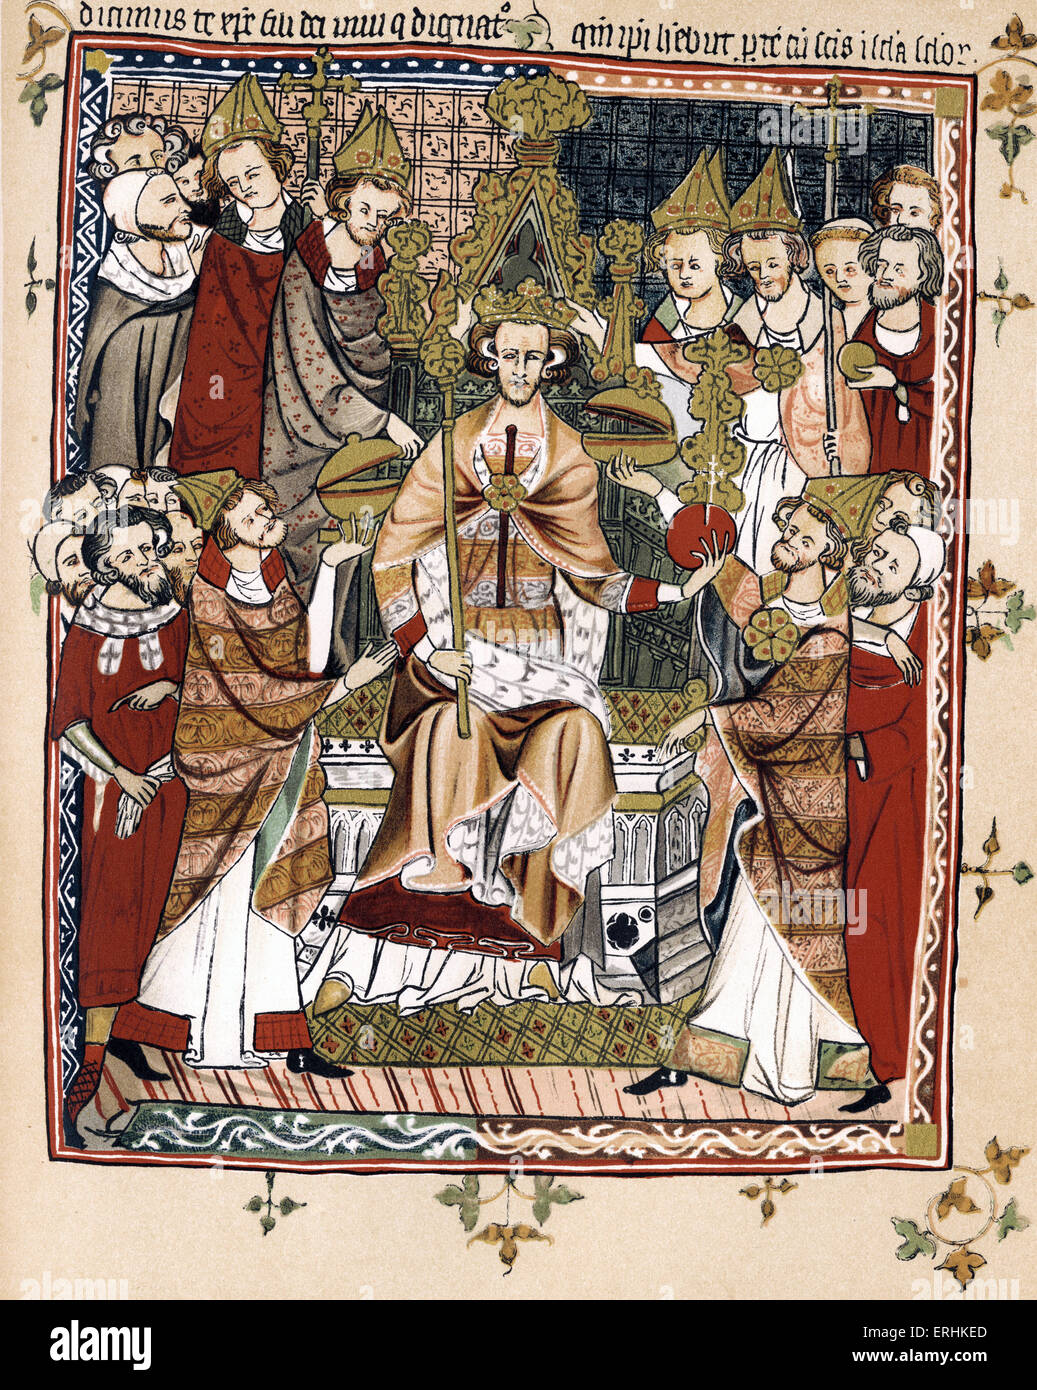 Le roi Édouard III - couronnement du roi Edward - début du xive siècle - France 13 novembre 1312 - 21 juin 1377. L'allumage Banque D'Images